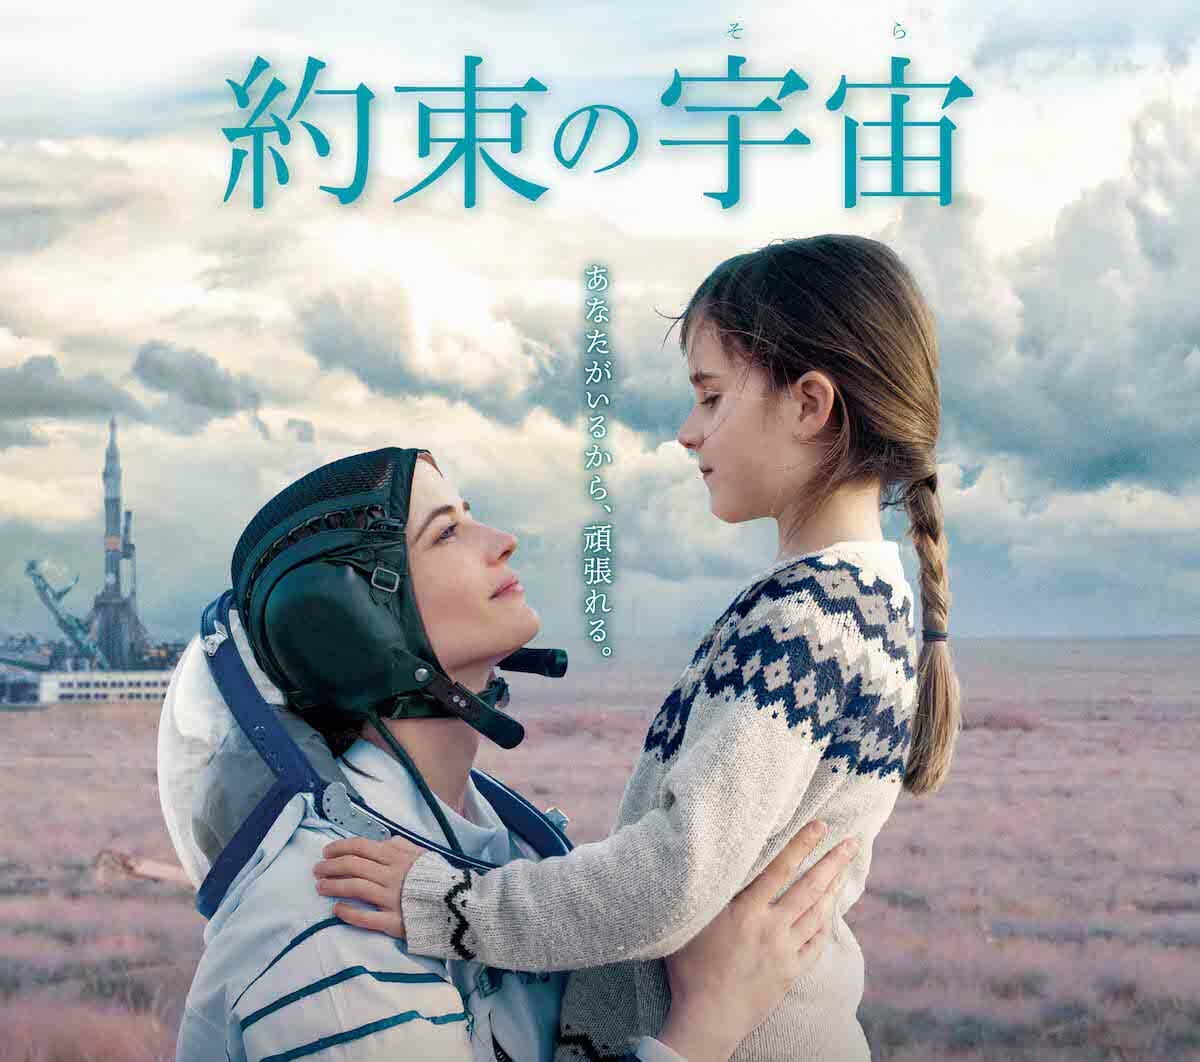 女性宇宙飛行士の葛藤と親子の絆を描き出す映画『約束の宇宙』4月16日公開